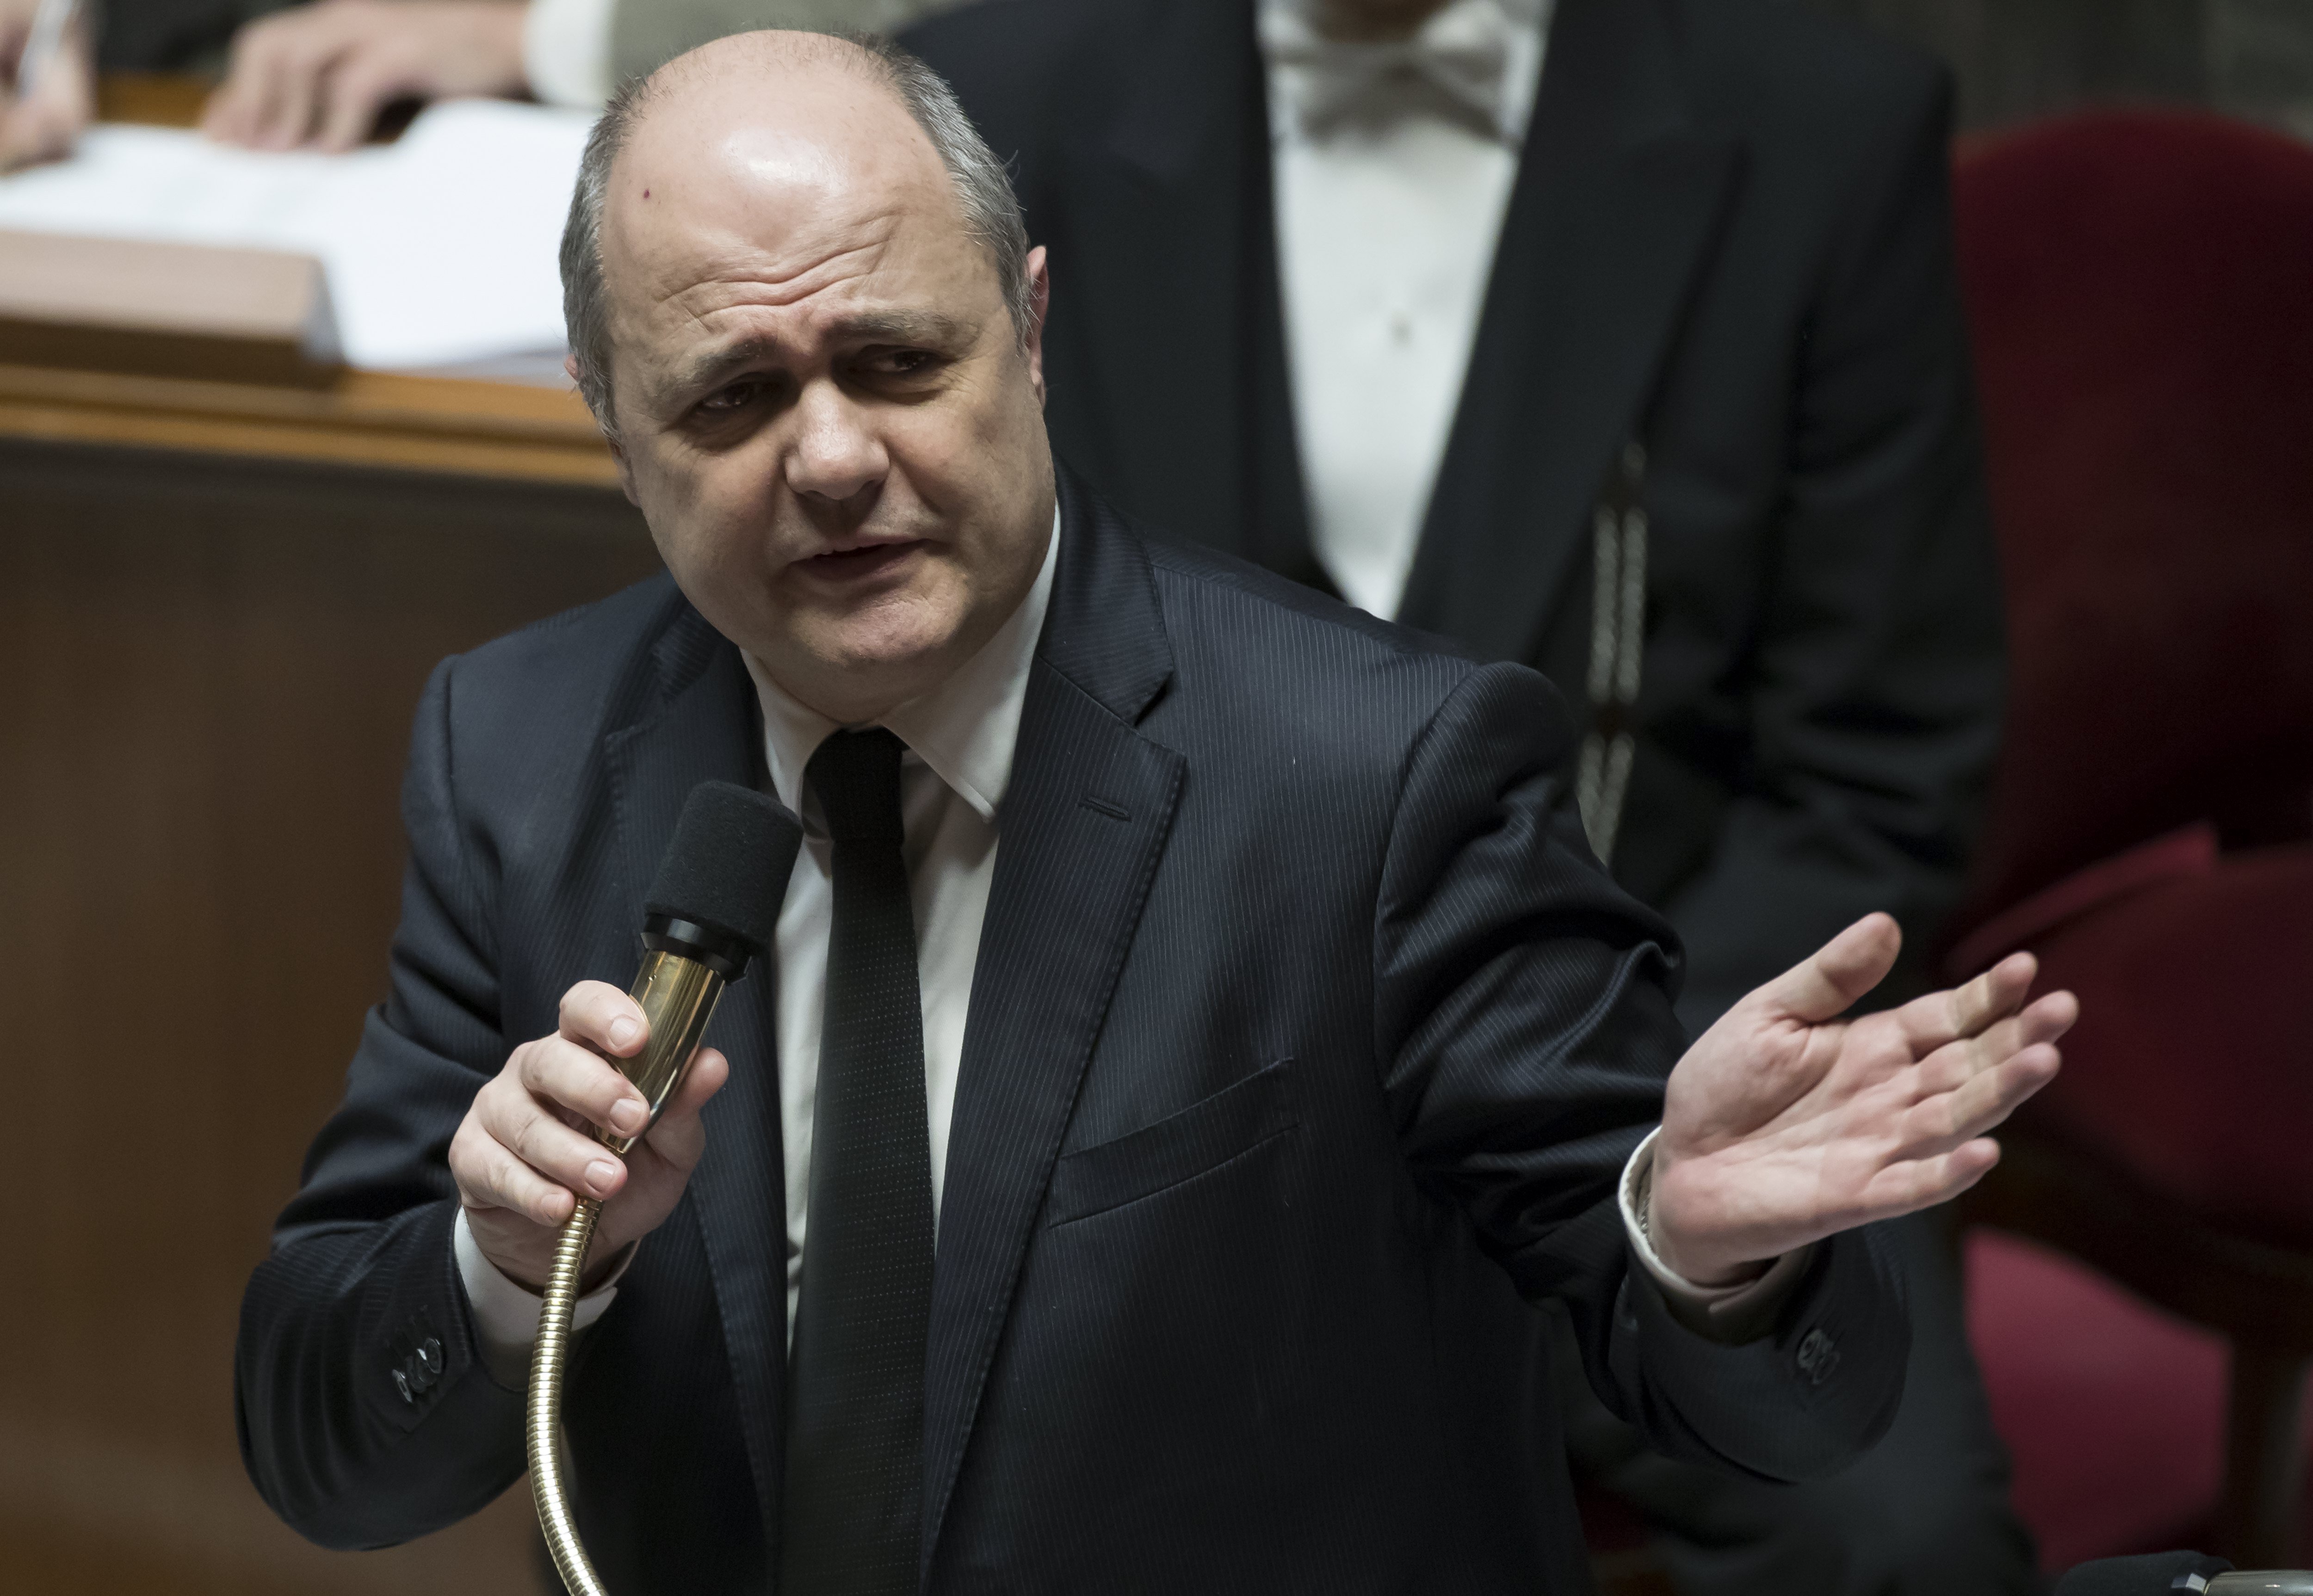 Dimiteix el ministre francès de l'Interior per haver contractat les seves filles menors